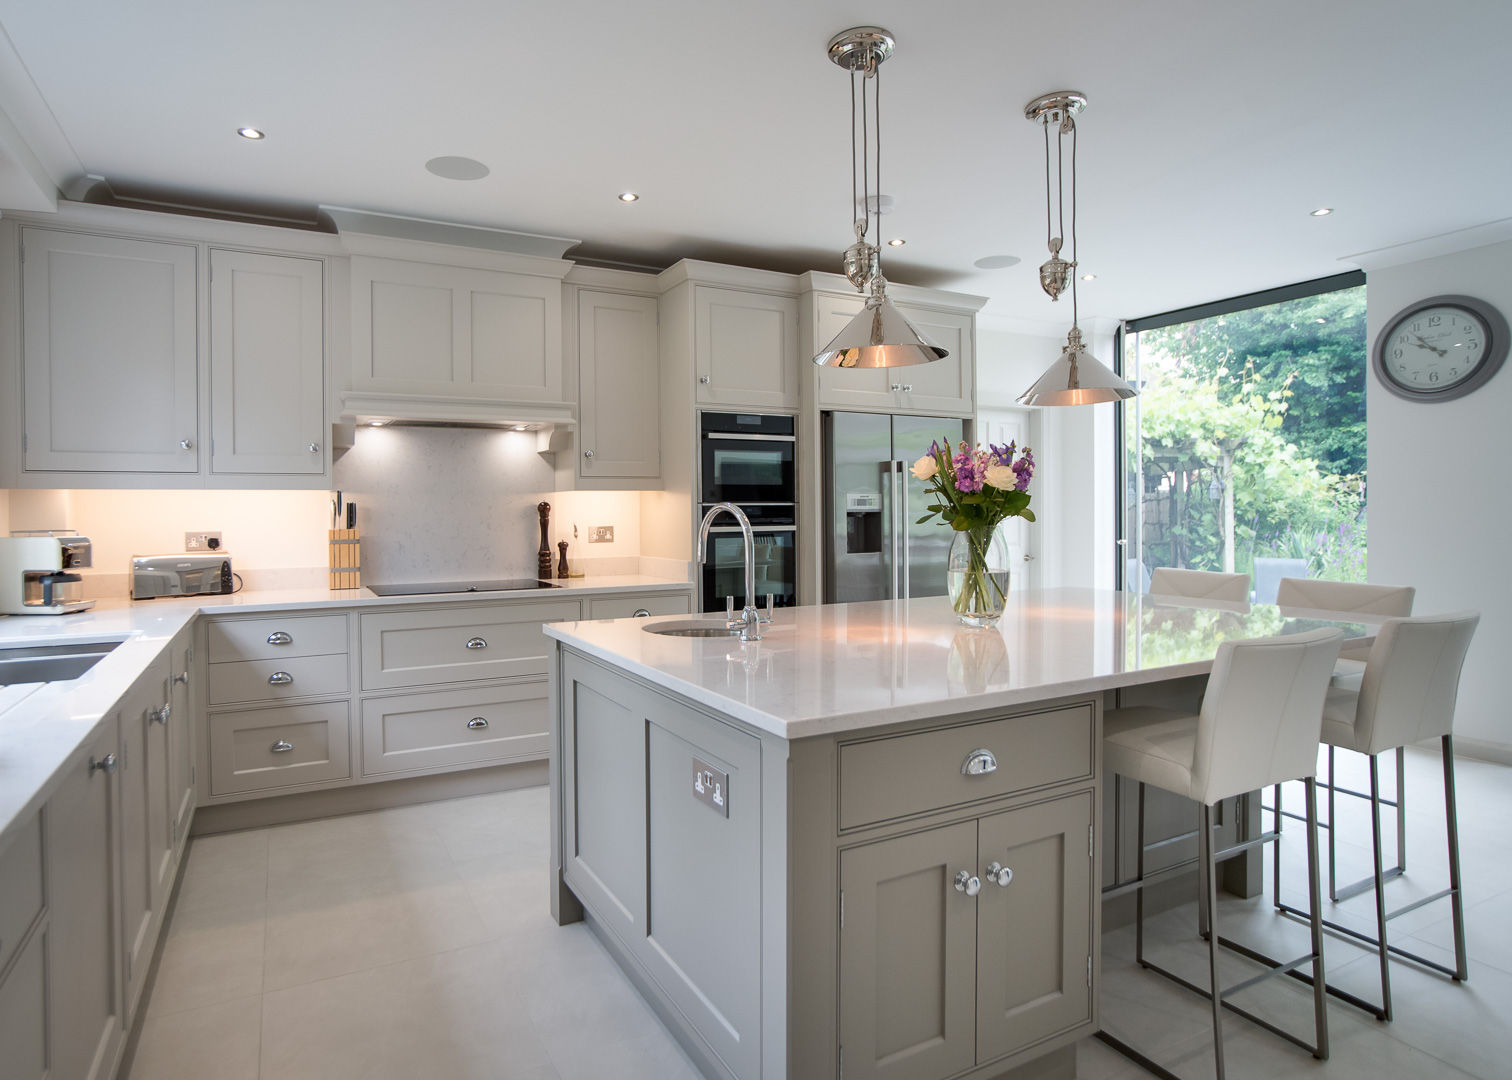 Luxurious, bespoke kitchen by John Ladbury John Ladbury and Company システムキッチン white,modern,minimalist,quartz